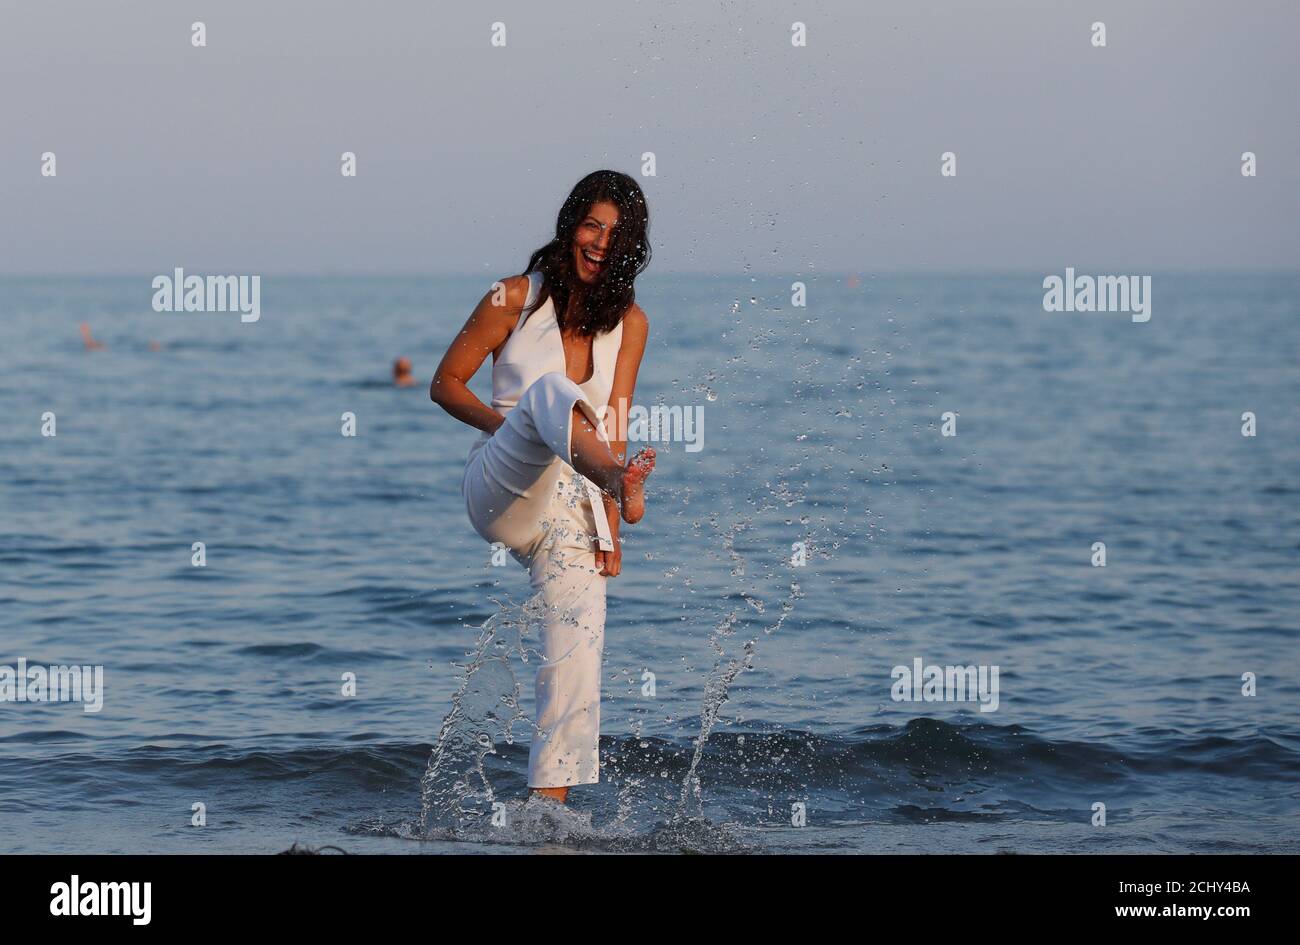 La actriz italiana Alessandra Mastronardi posan durante un fotociclo en la playa. Mastronardi acogerá la ceremonia de apertura del 76º Festival Internacional de Cine de Venecia en Venecia, Italia, el 27 de agosto de 2019. REUTERS/ Yara Nardi Foto de stock